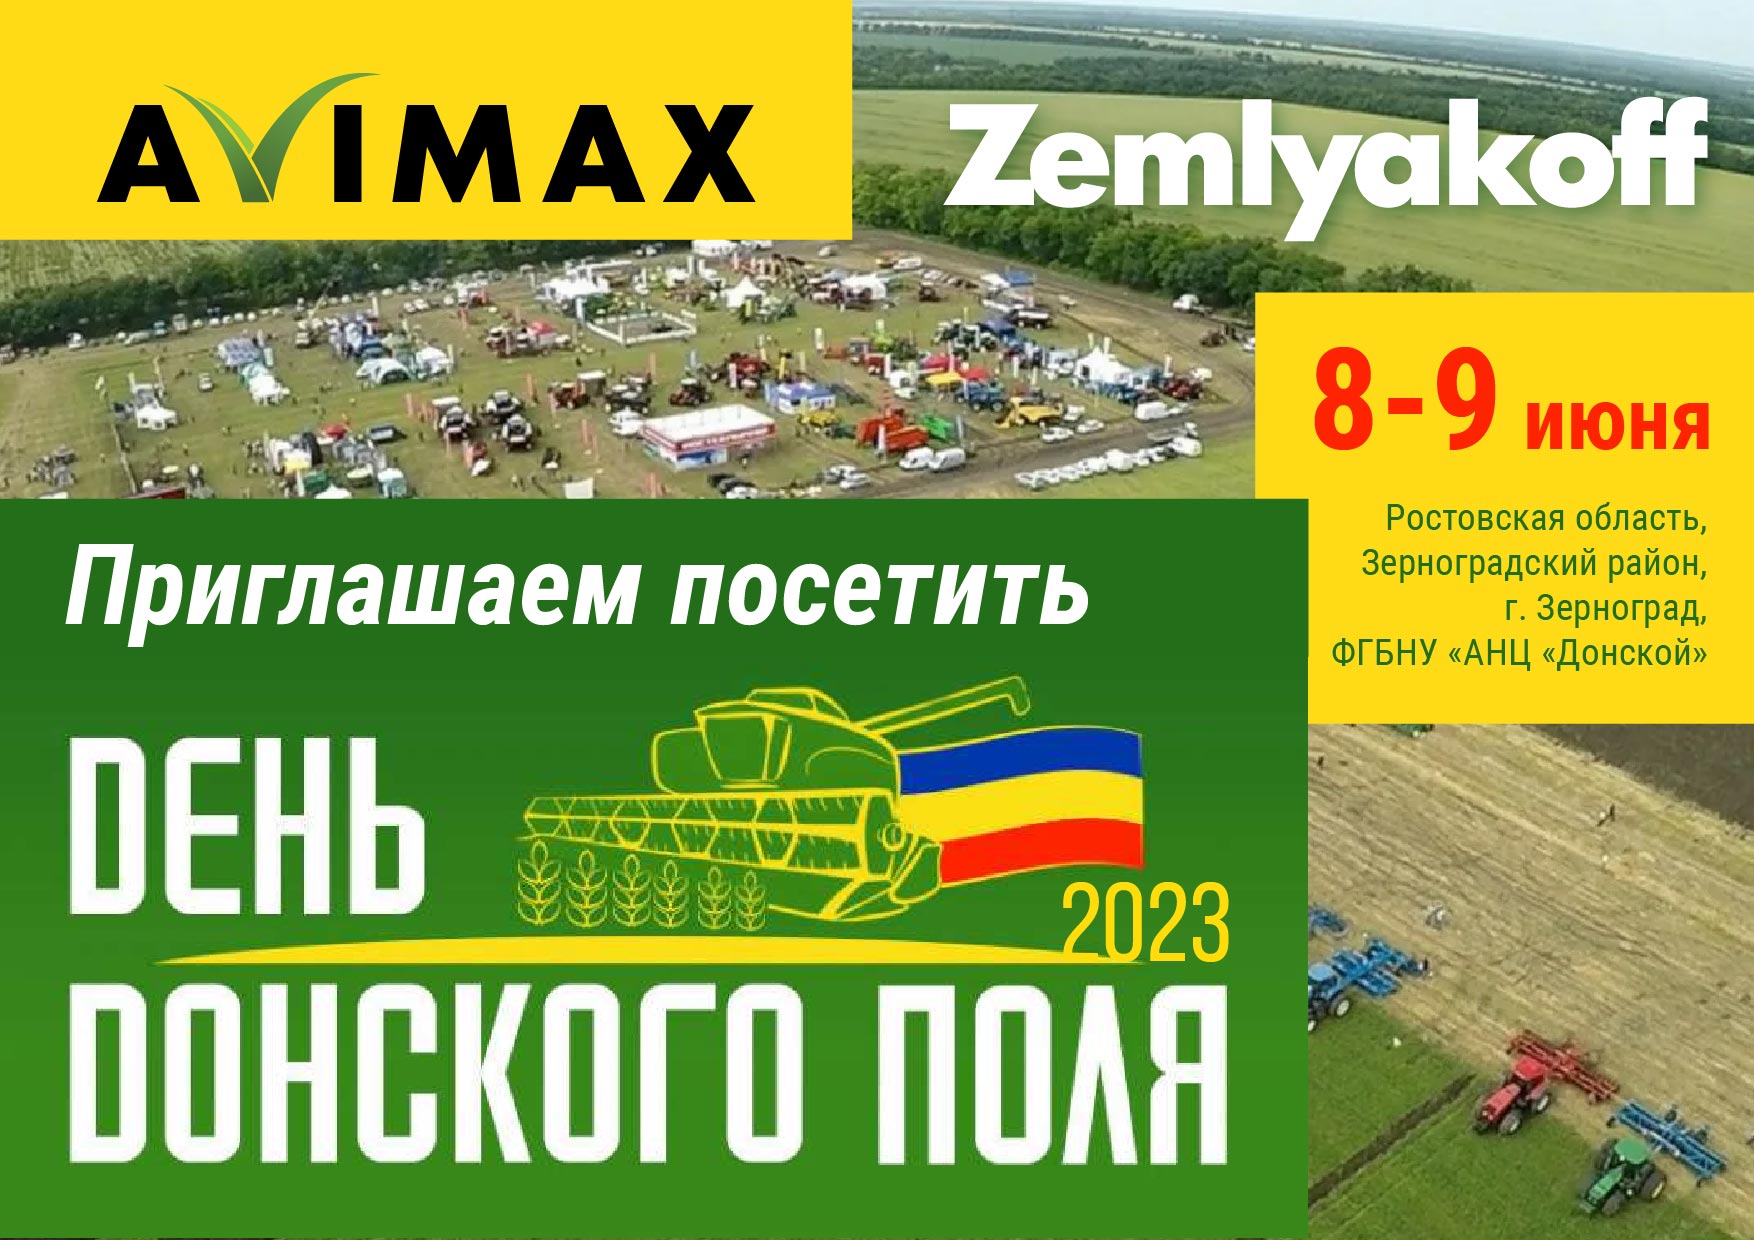 День Донского поля 2023 в Ростовской области